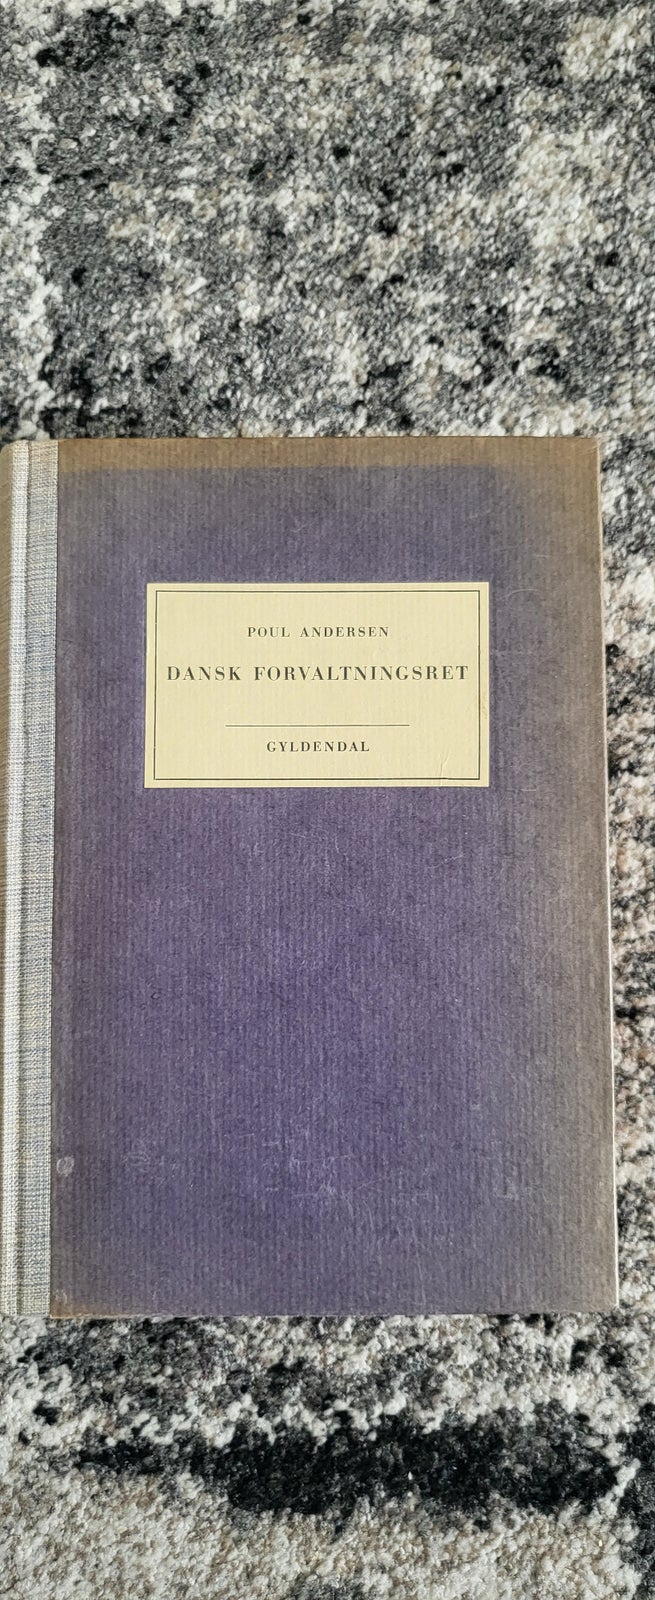 Dansk forvaltningsret, Poul Andersen, år 1946